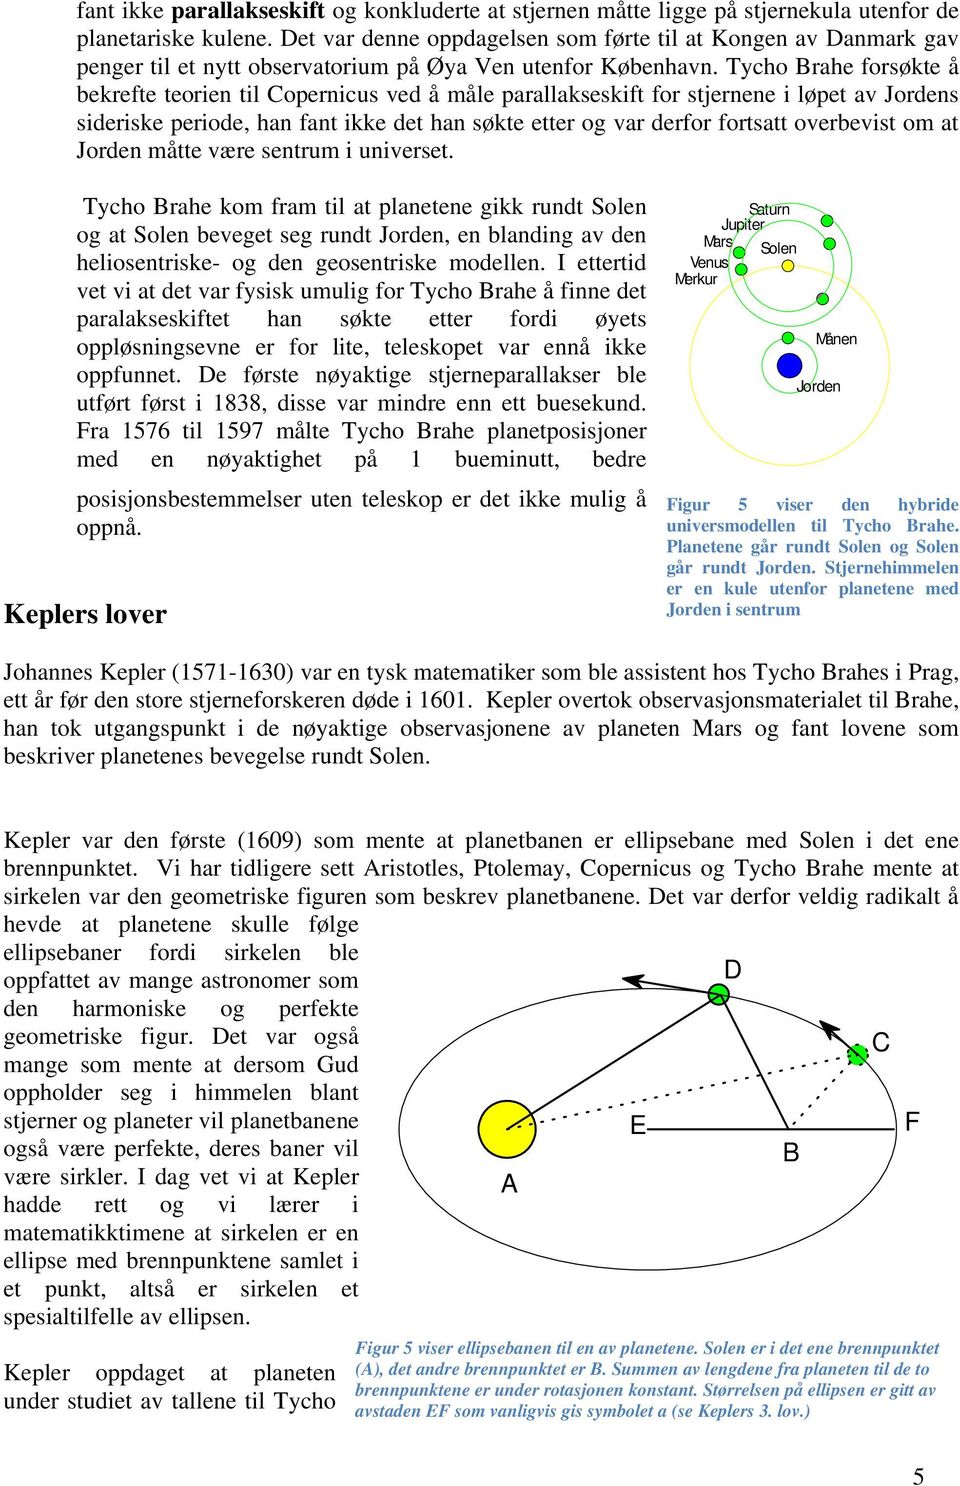 Tycho Brahe forsøkte å bekrefte teorien til Copernicus ved å måle parallakseskift for stjernene i løpet av Jordens sideriske periode, han fant ikke det han søkte etter og var derfor fortsatt